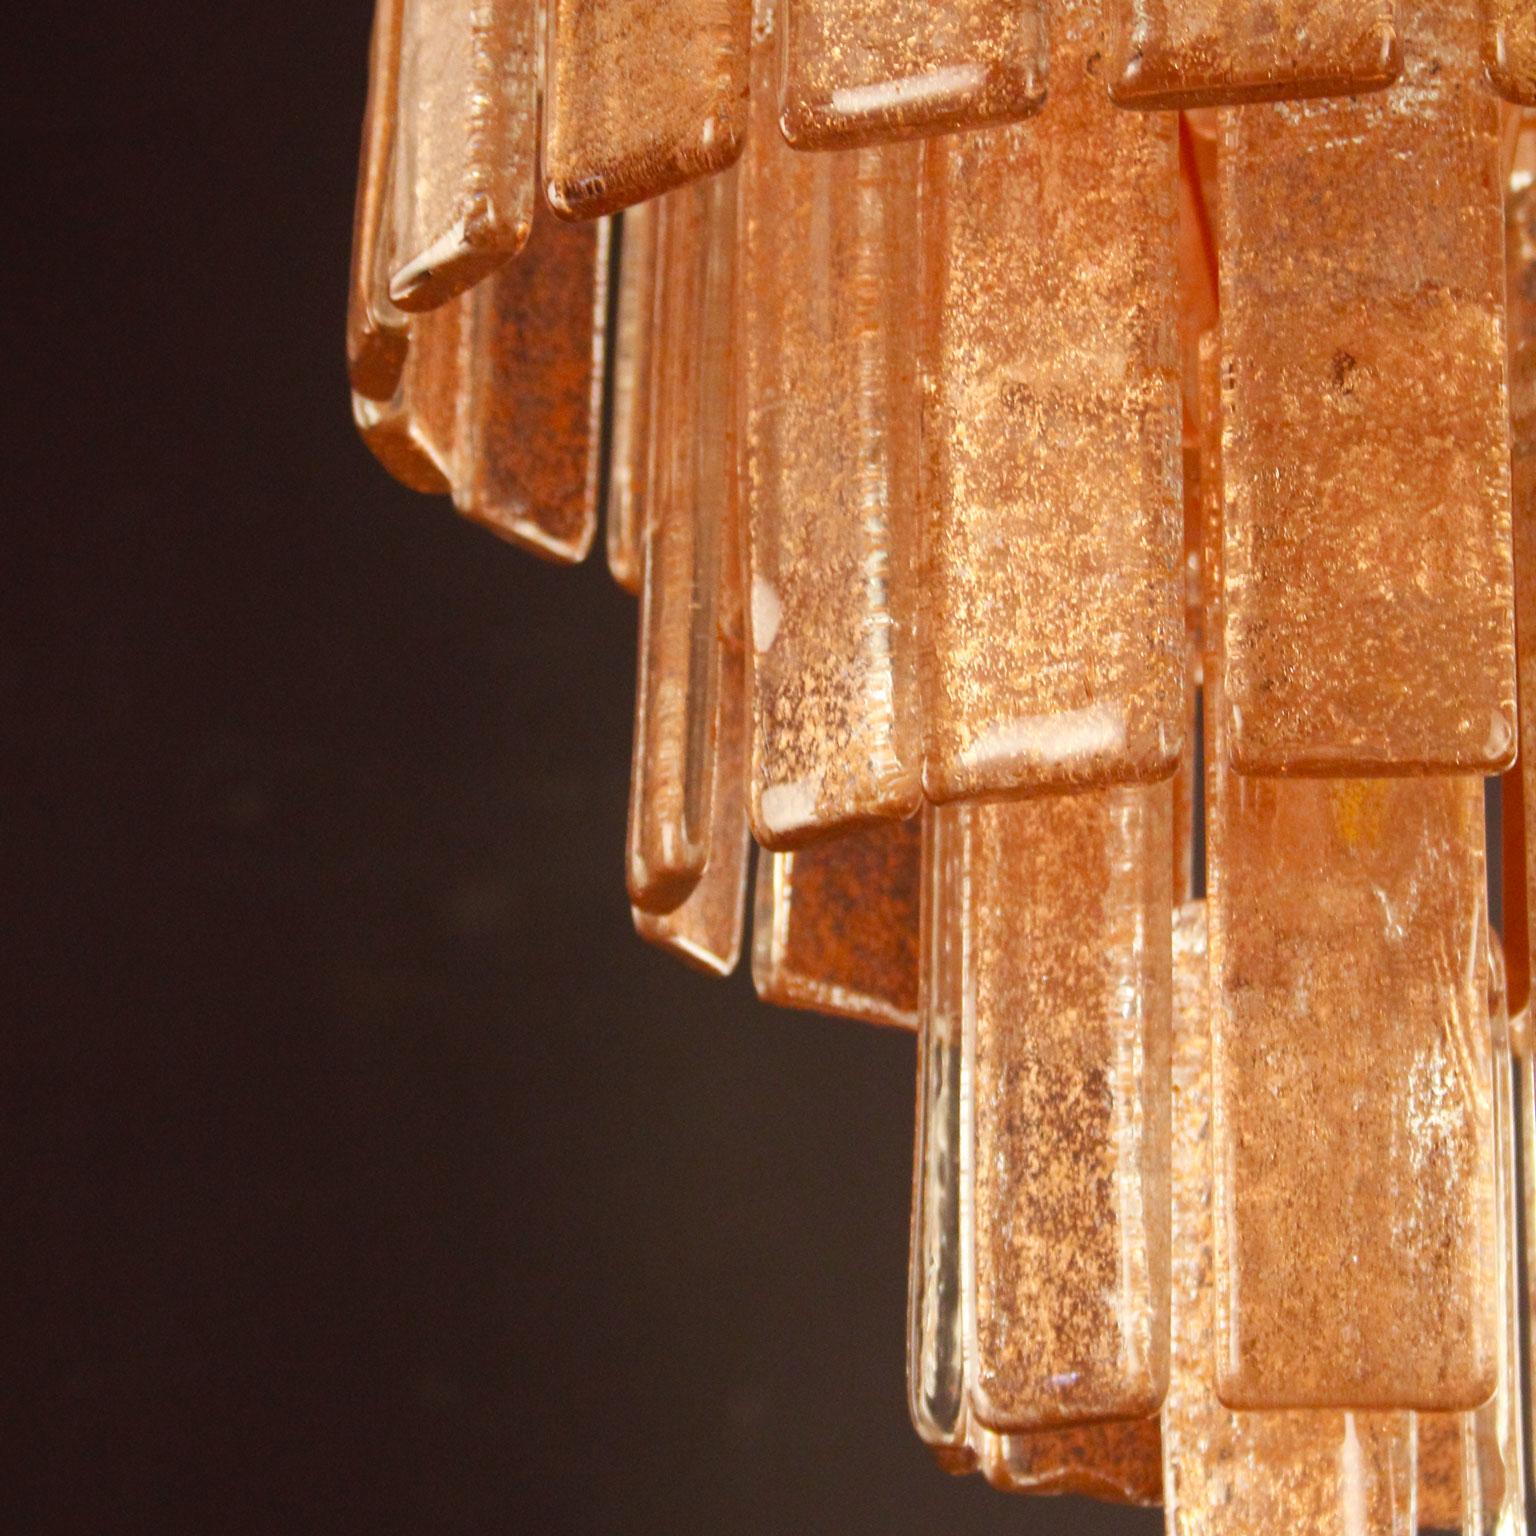 Charleston Deckenleuchte mit kupferfarbenen Glasleisten und gebürsteter Kupferstruktur von Multiforme.
Die Deckenleuchte Charleston im modernen Stil aus unserer Progressive-Kollektion ist ein äußerst vielseitiges Beleuchtungsobjekt, das in vielen